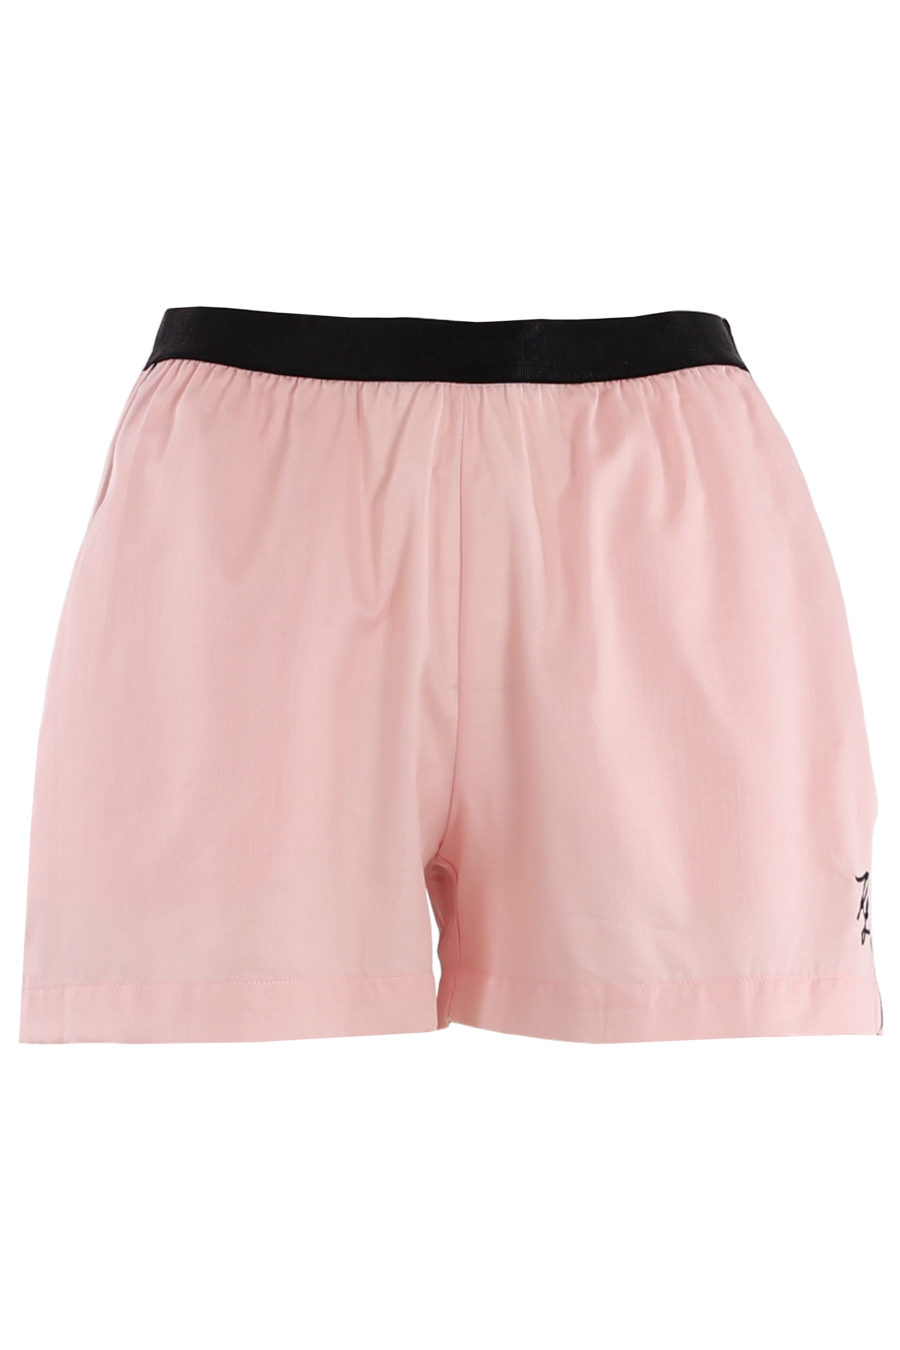 Conjunto pijama con pantalones cortos de color rosa - bfdbfa6d3482e3e64bbf5063658997b77b0f5d9f